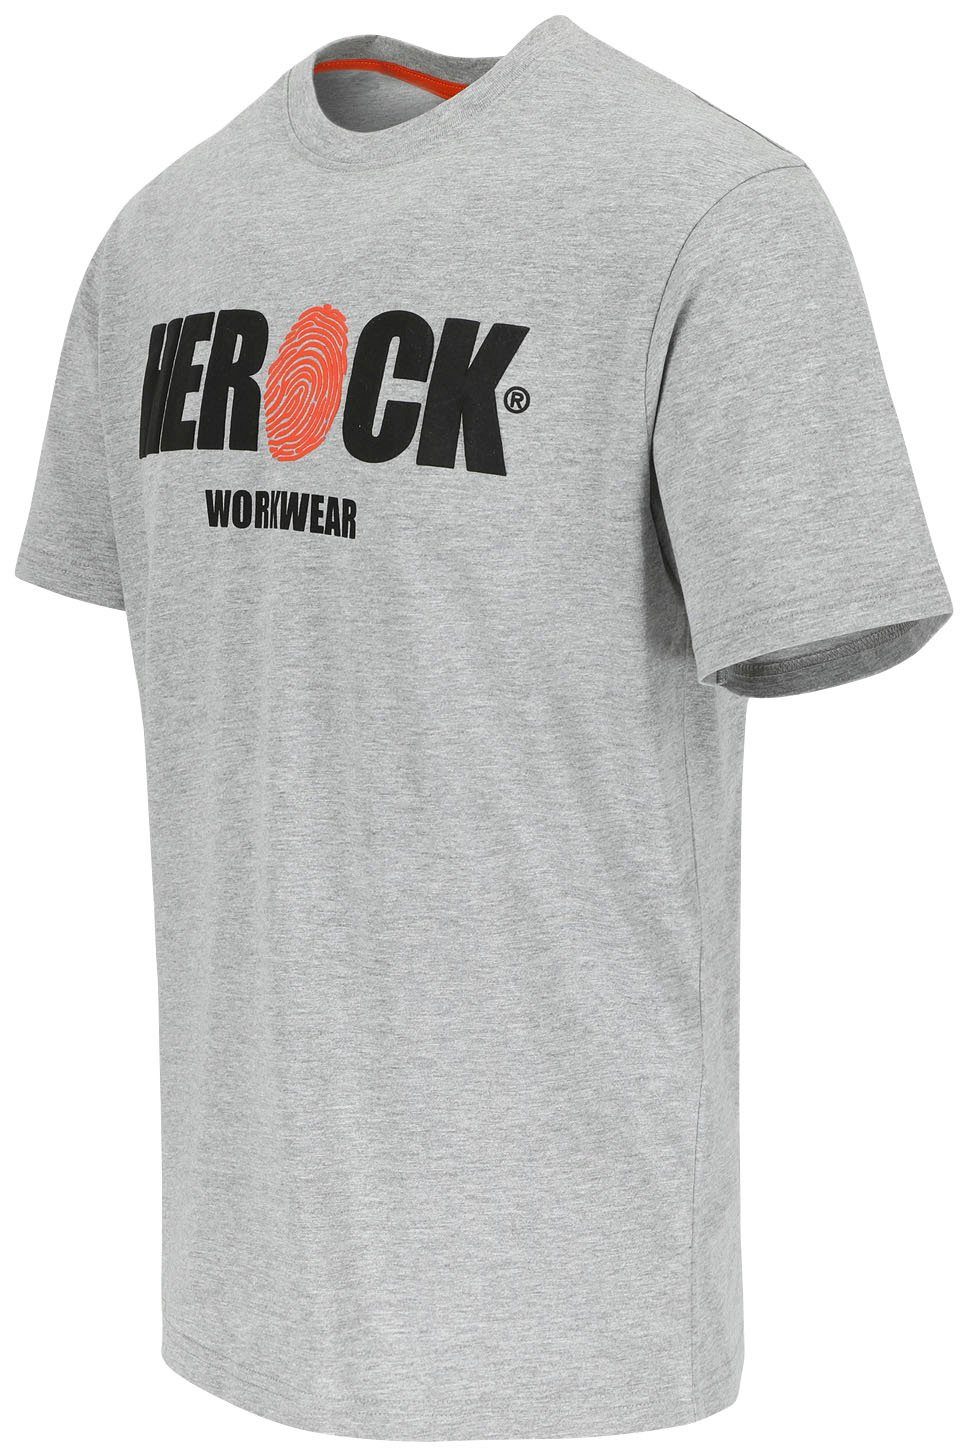 Herock angenehmes grau Tragegefühl mit T-Shirt ENI Rundhals, Herock®-Aufdruck, Baumwolle,